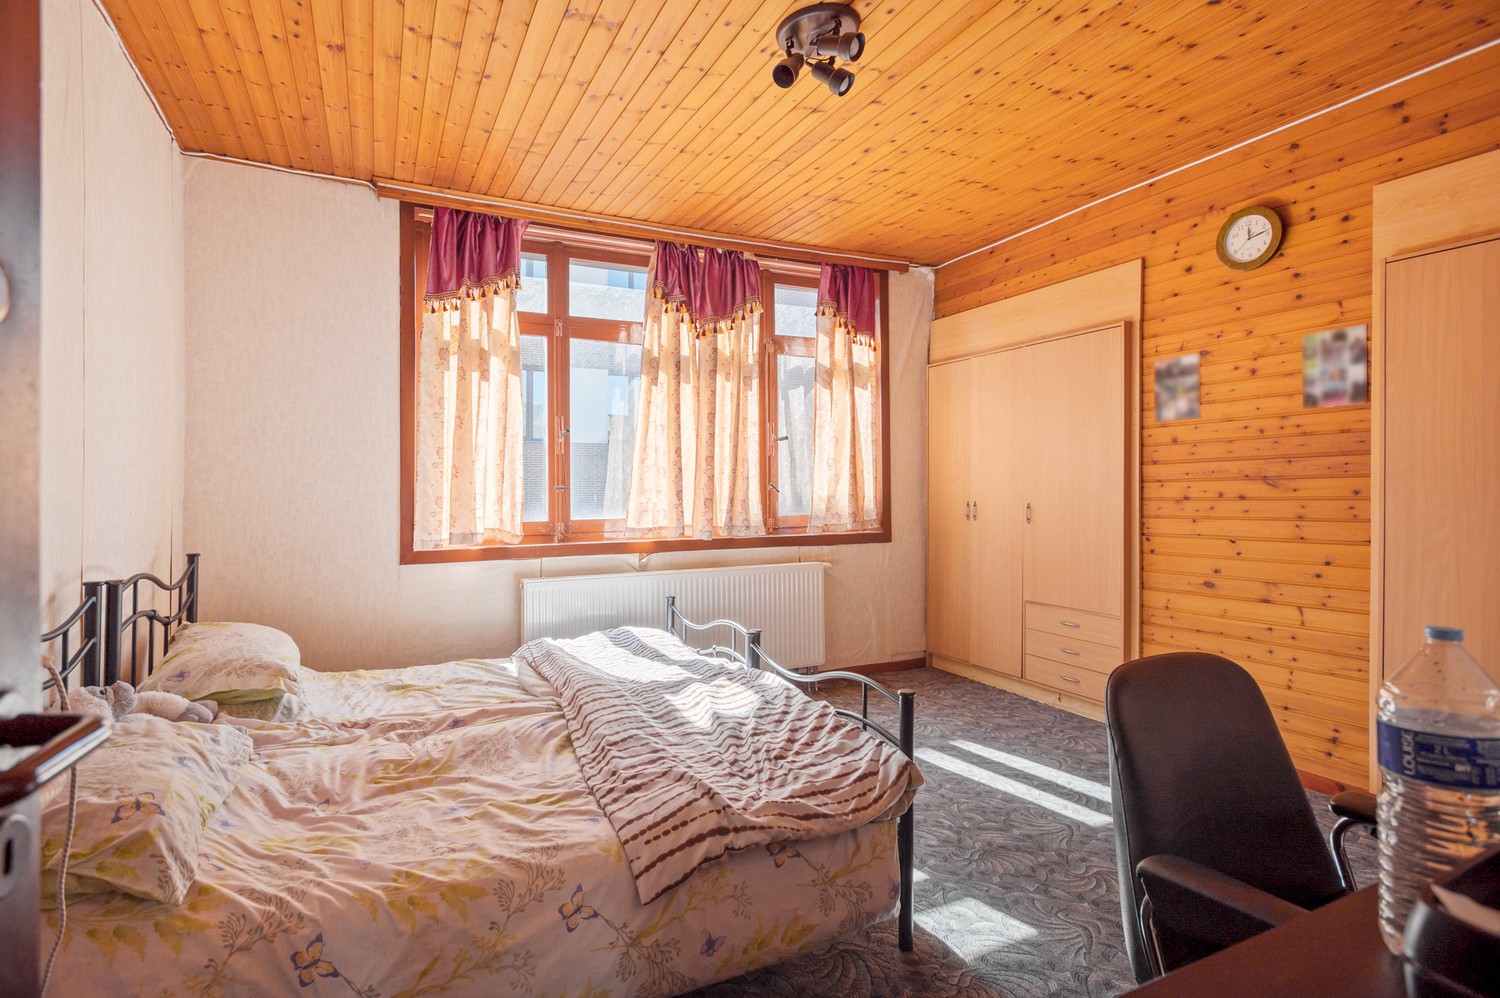 Gunstig gelegen en op te frissen woning met 4 ruime slaapkamers te koop te Antwerpen afbeelding 11